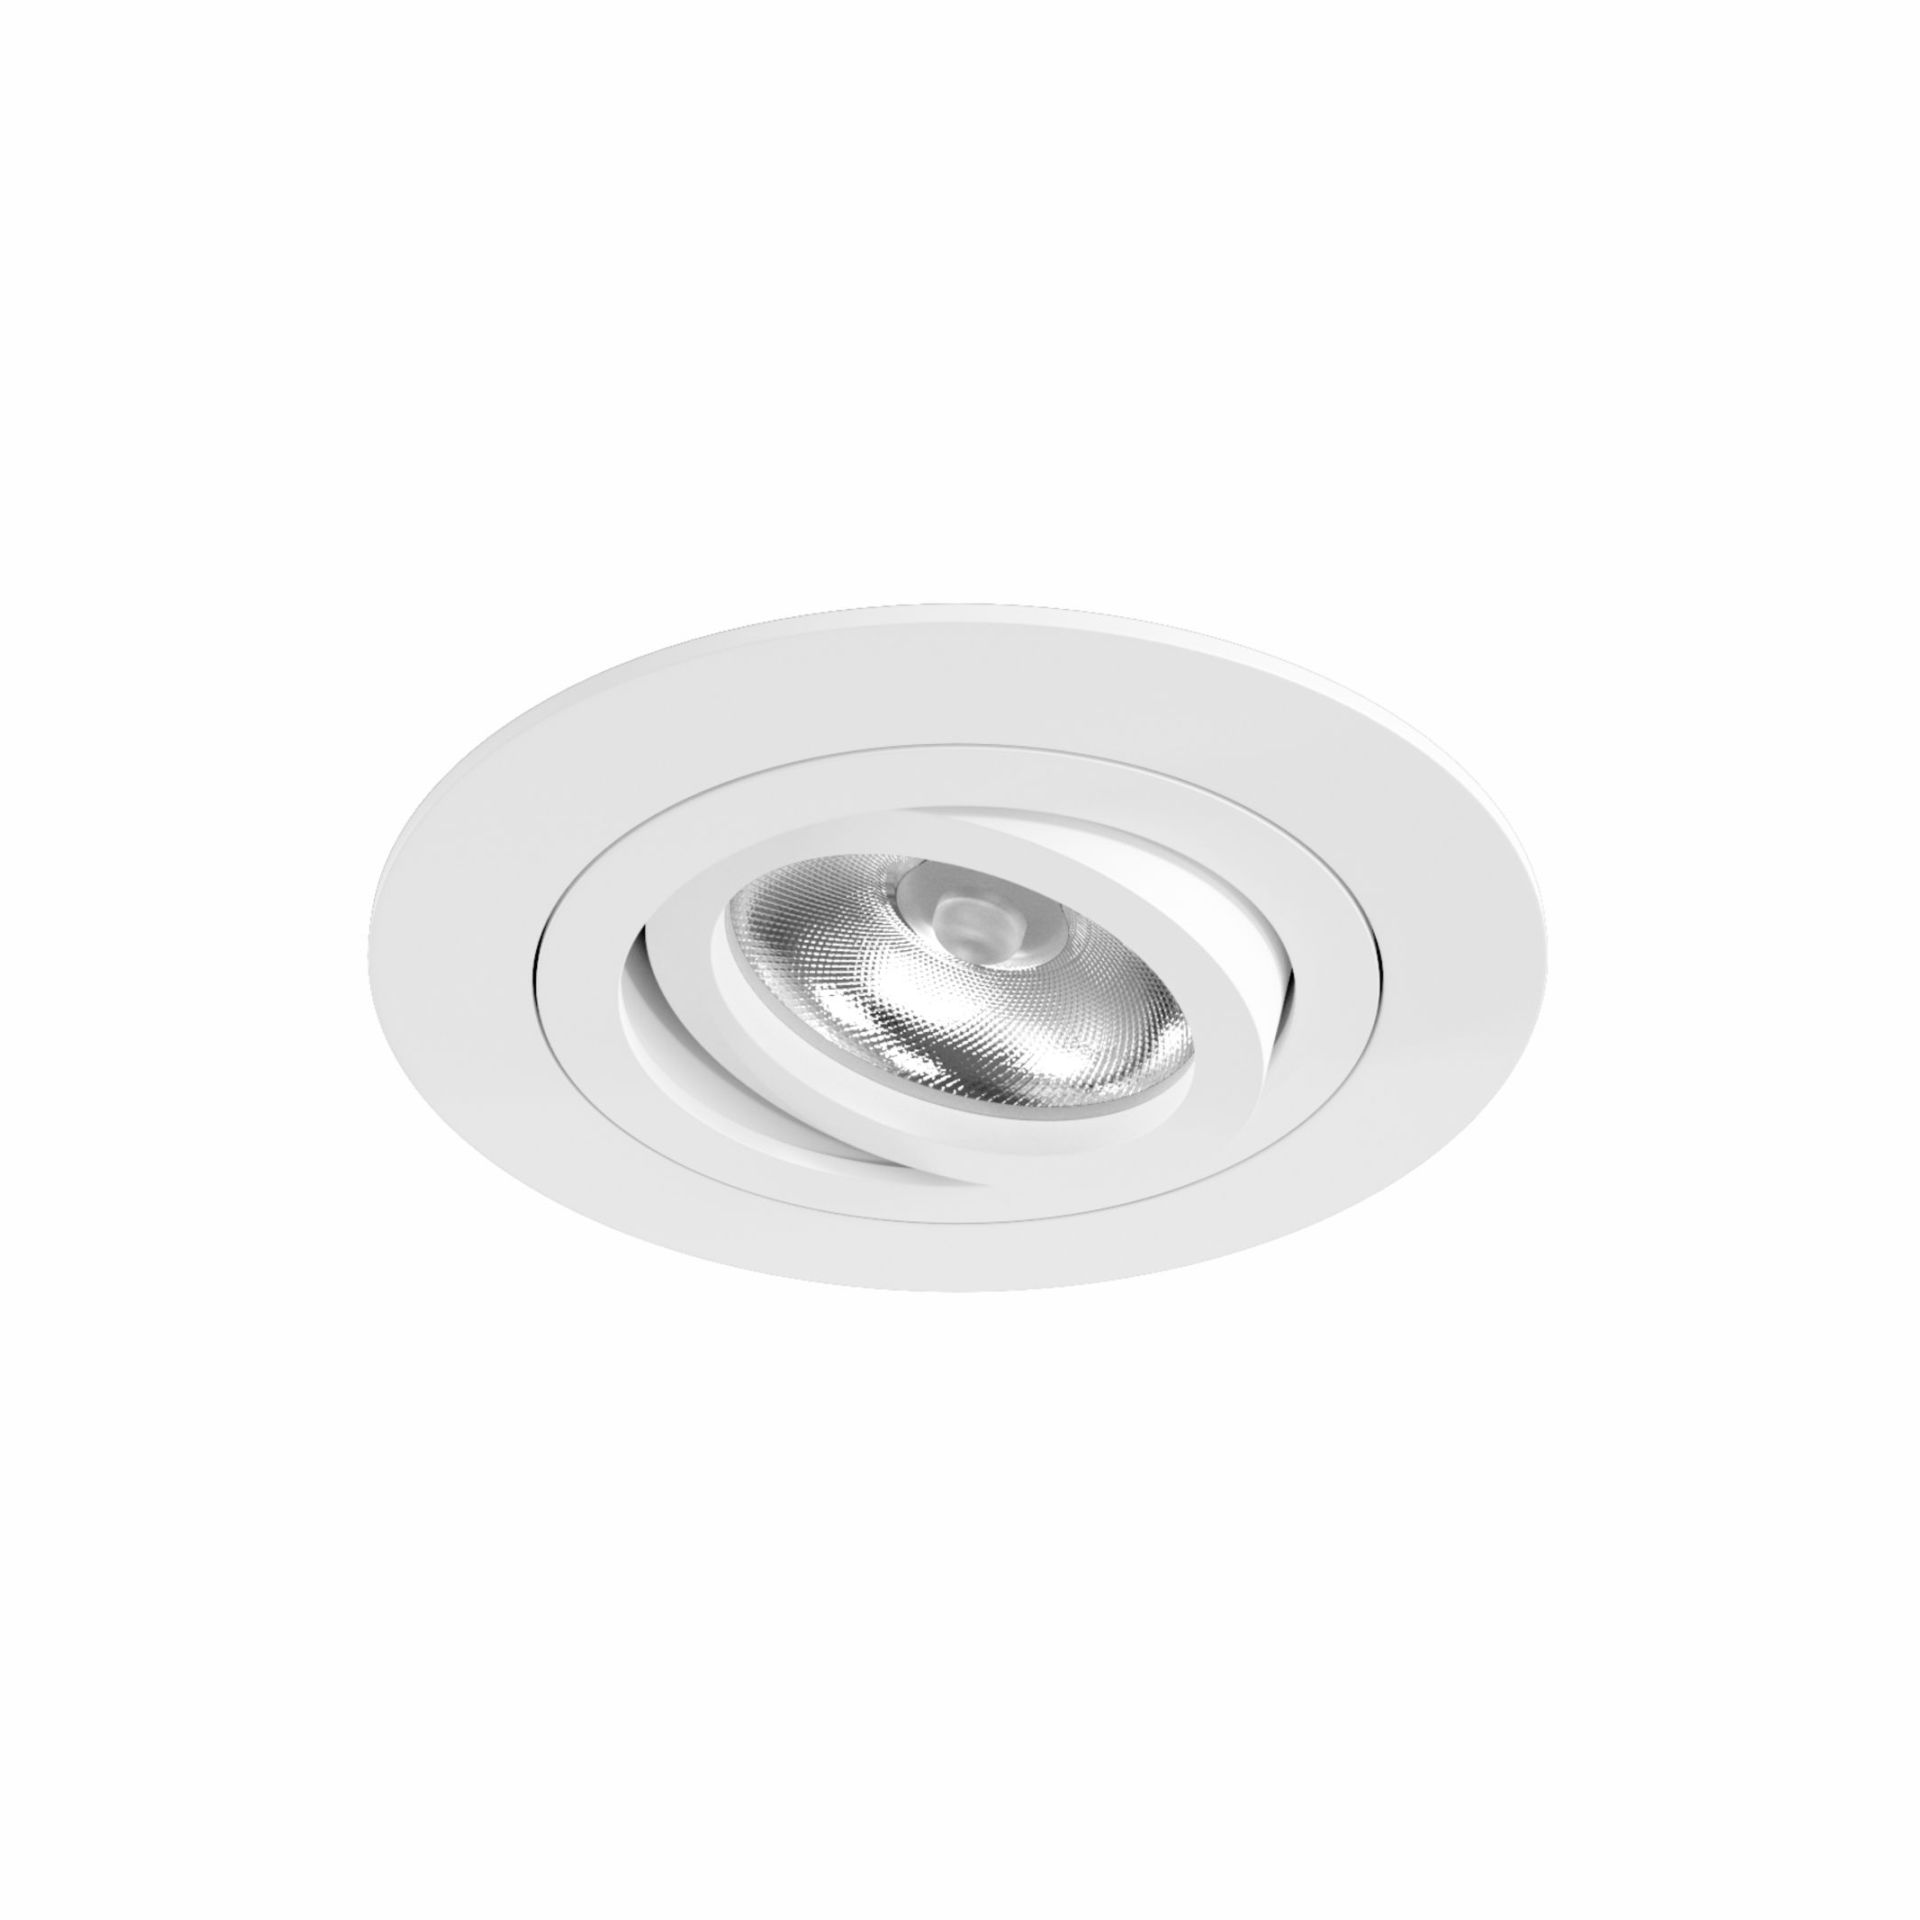 LED Deckeneinbauleuchte | 5W LED Leuchtmittel inklusive hochwertigem Aluminium Einbauring | passt zu jedem Interieur | in schwarz, weiß oder gebürstetem Aluminium | einzel oder Gruppenmontierung